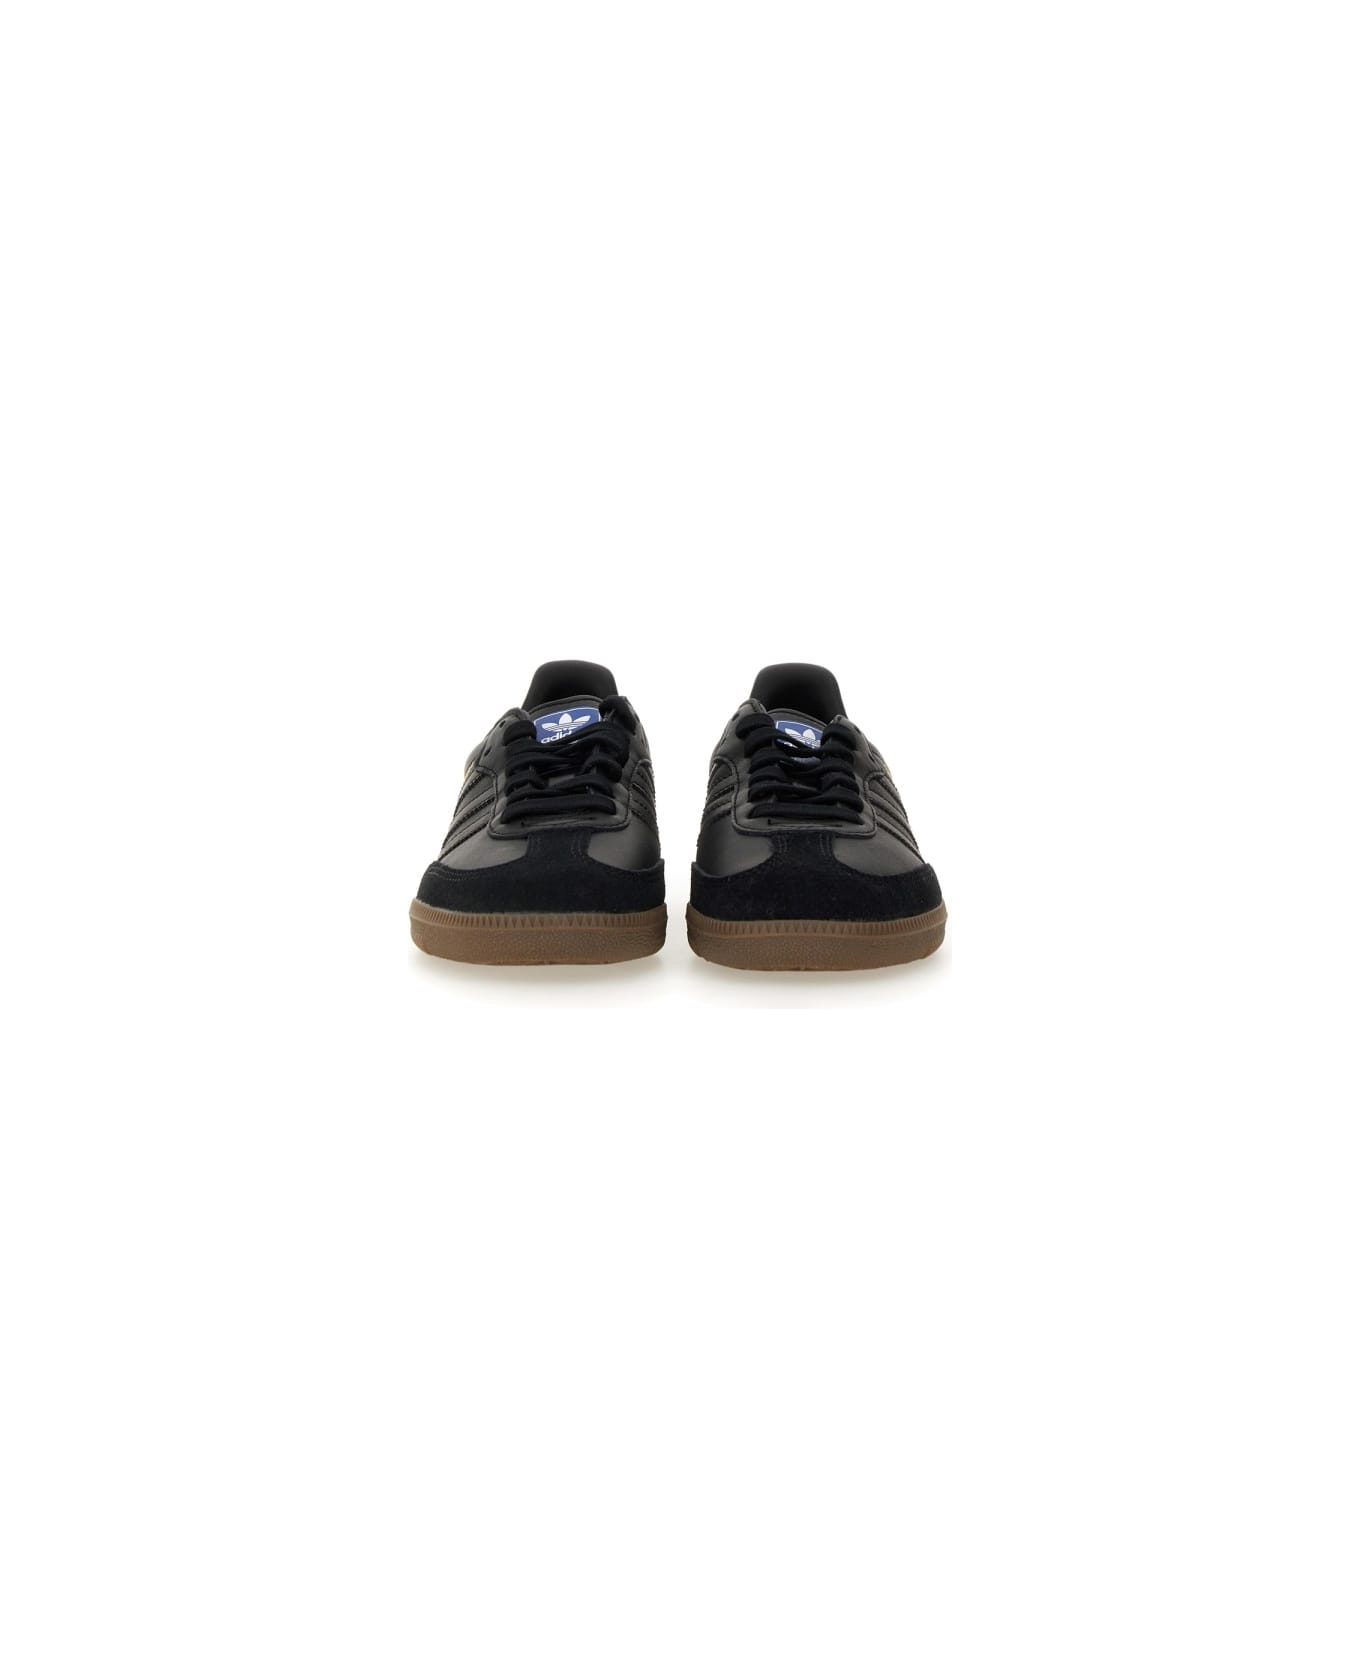 Adidas Originals Sneaker "samba" - BLACK スニーカー